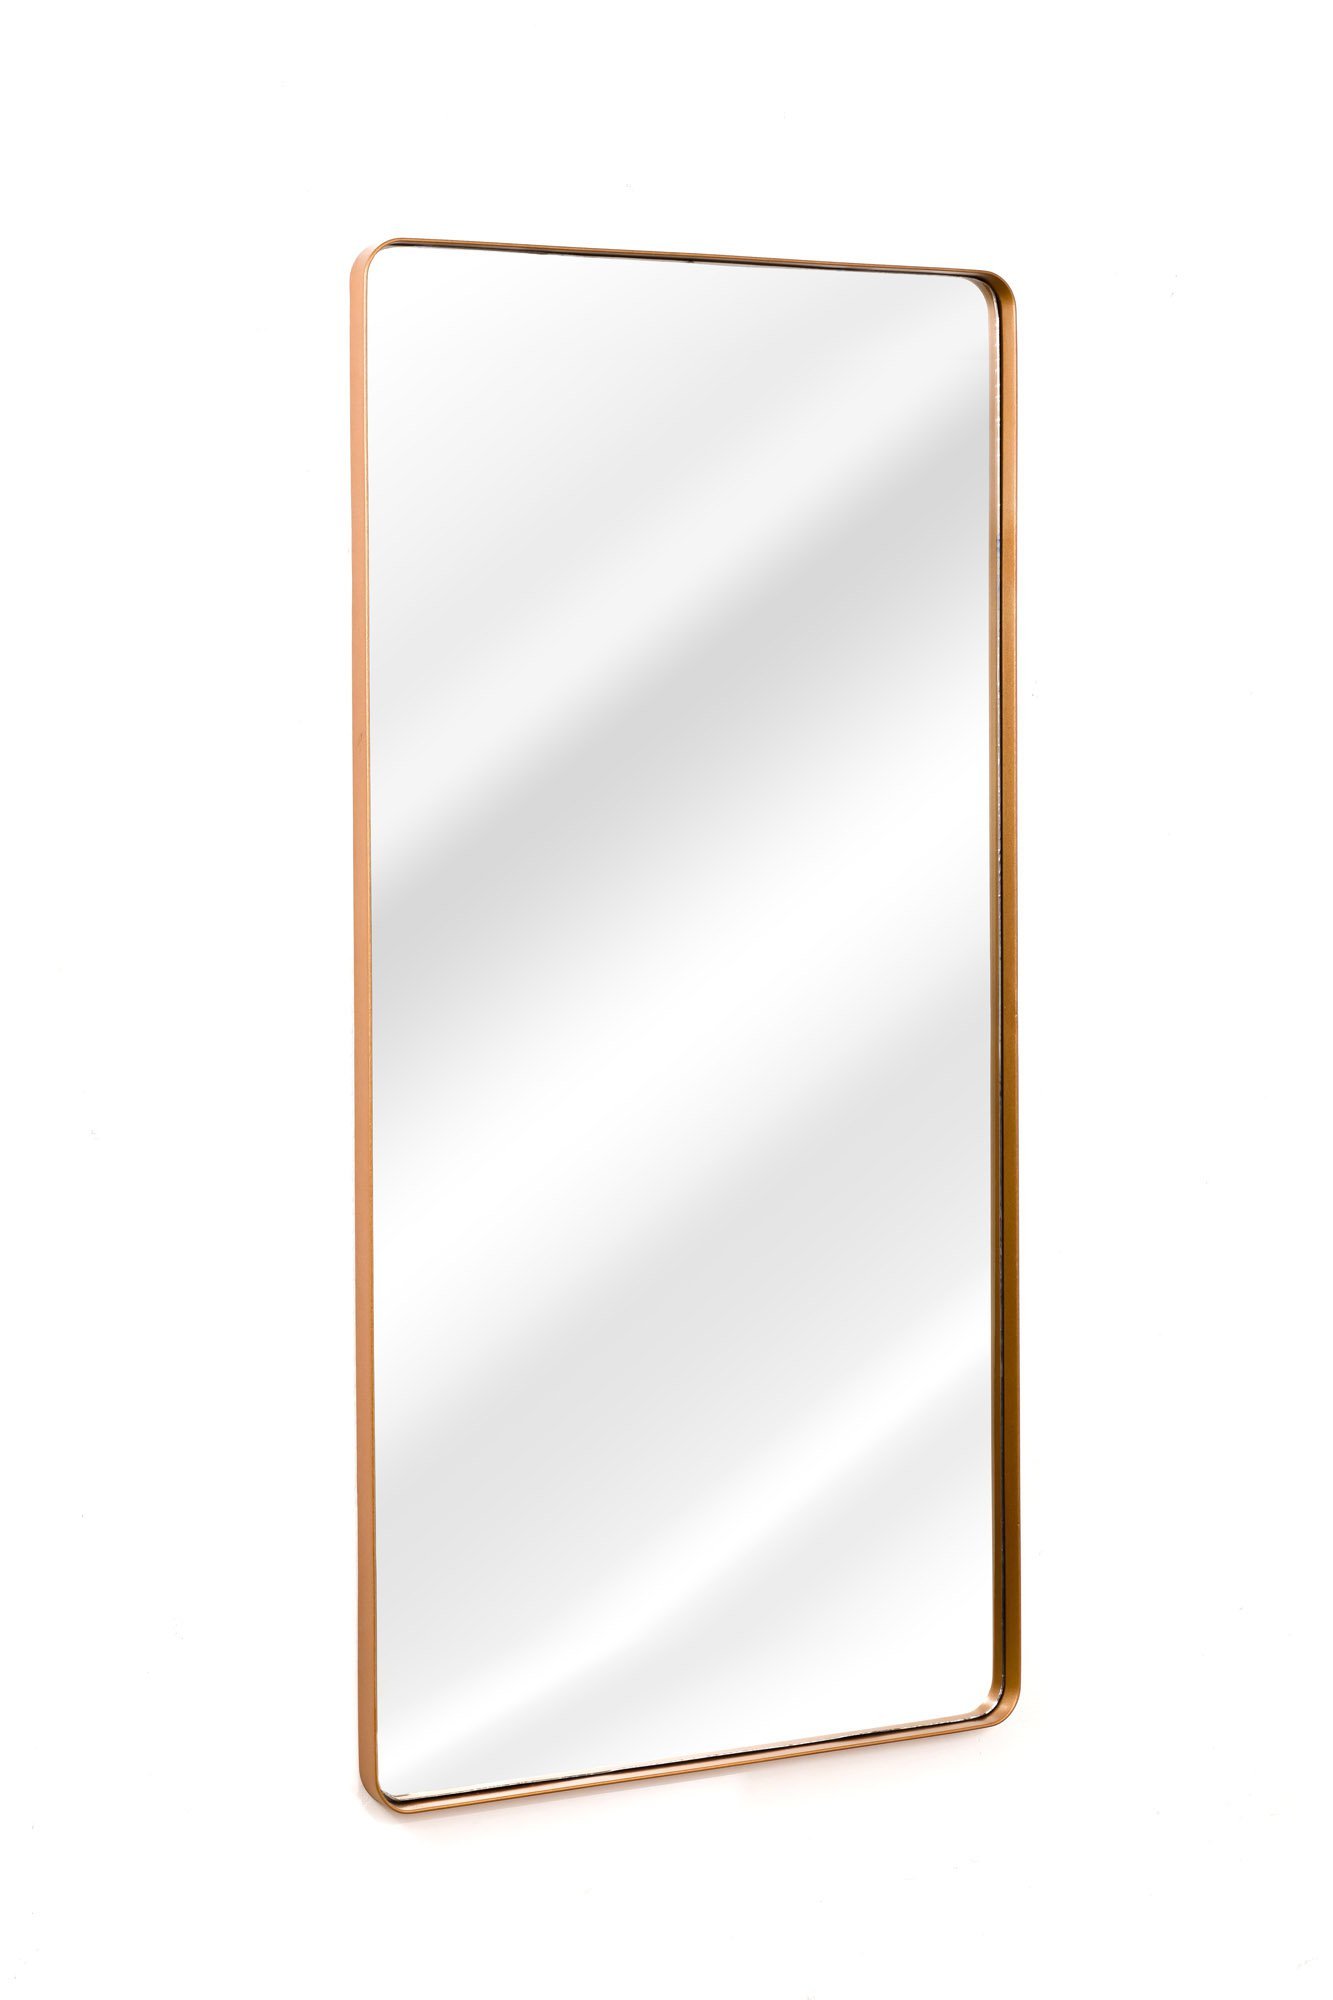 Espelho Grande Corpo Inteiro Retangular Com Moldura Em Metal Industrial 120 x 60 Cm Bronze - 3